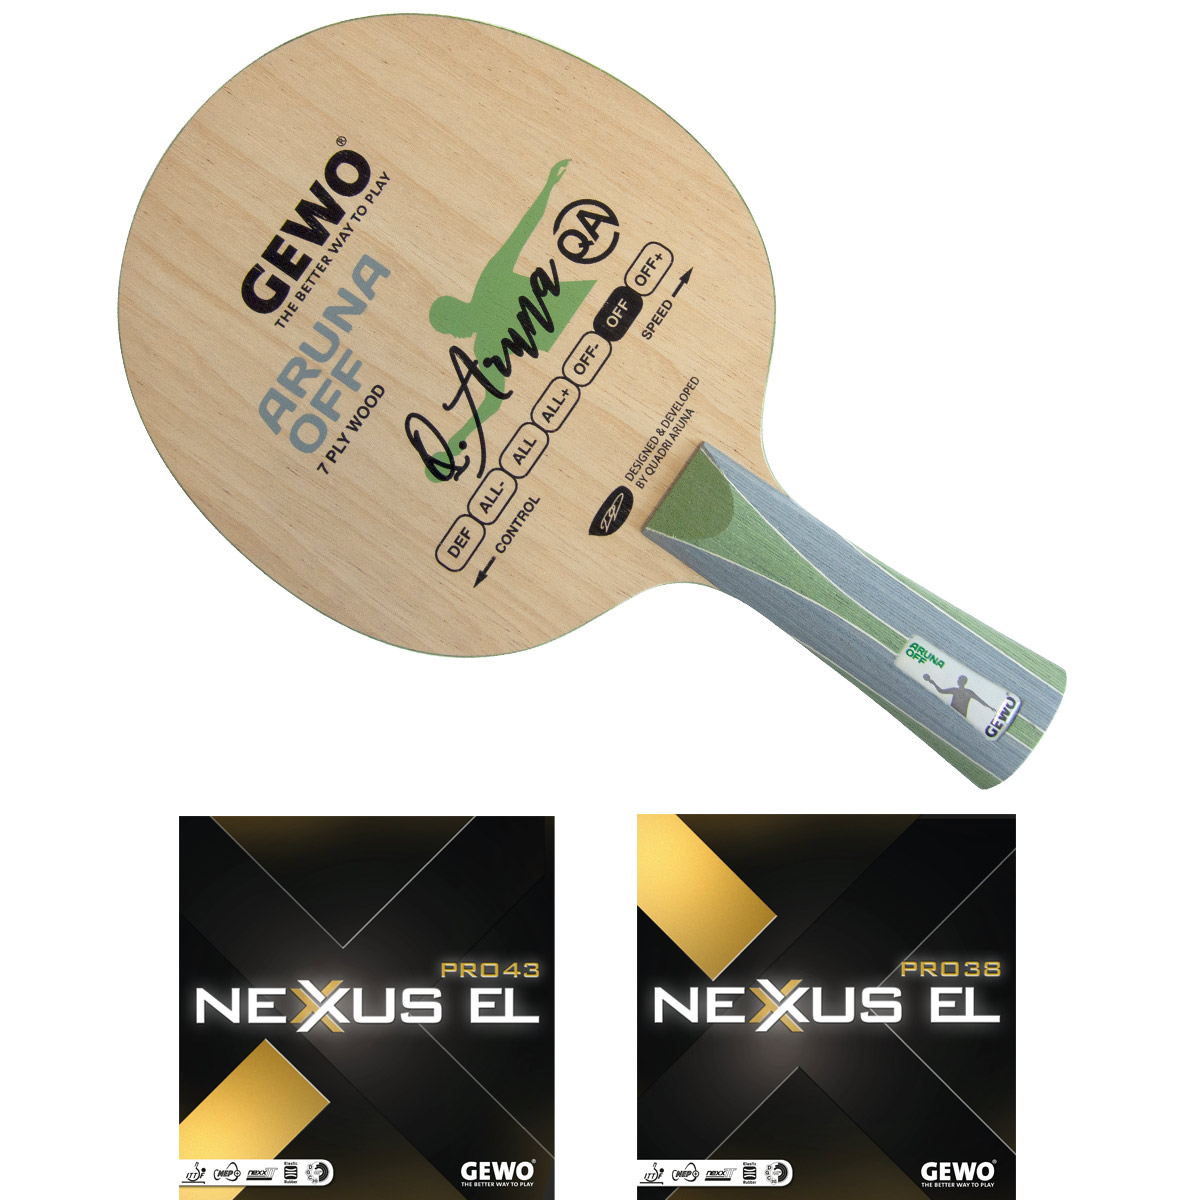 GEWO Bat: Blade Aruna OFF with Nexxus EL Pro 43 + Nexxus EL Pro 38